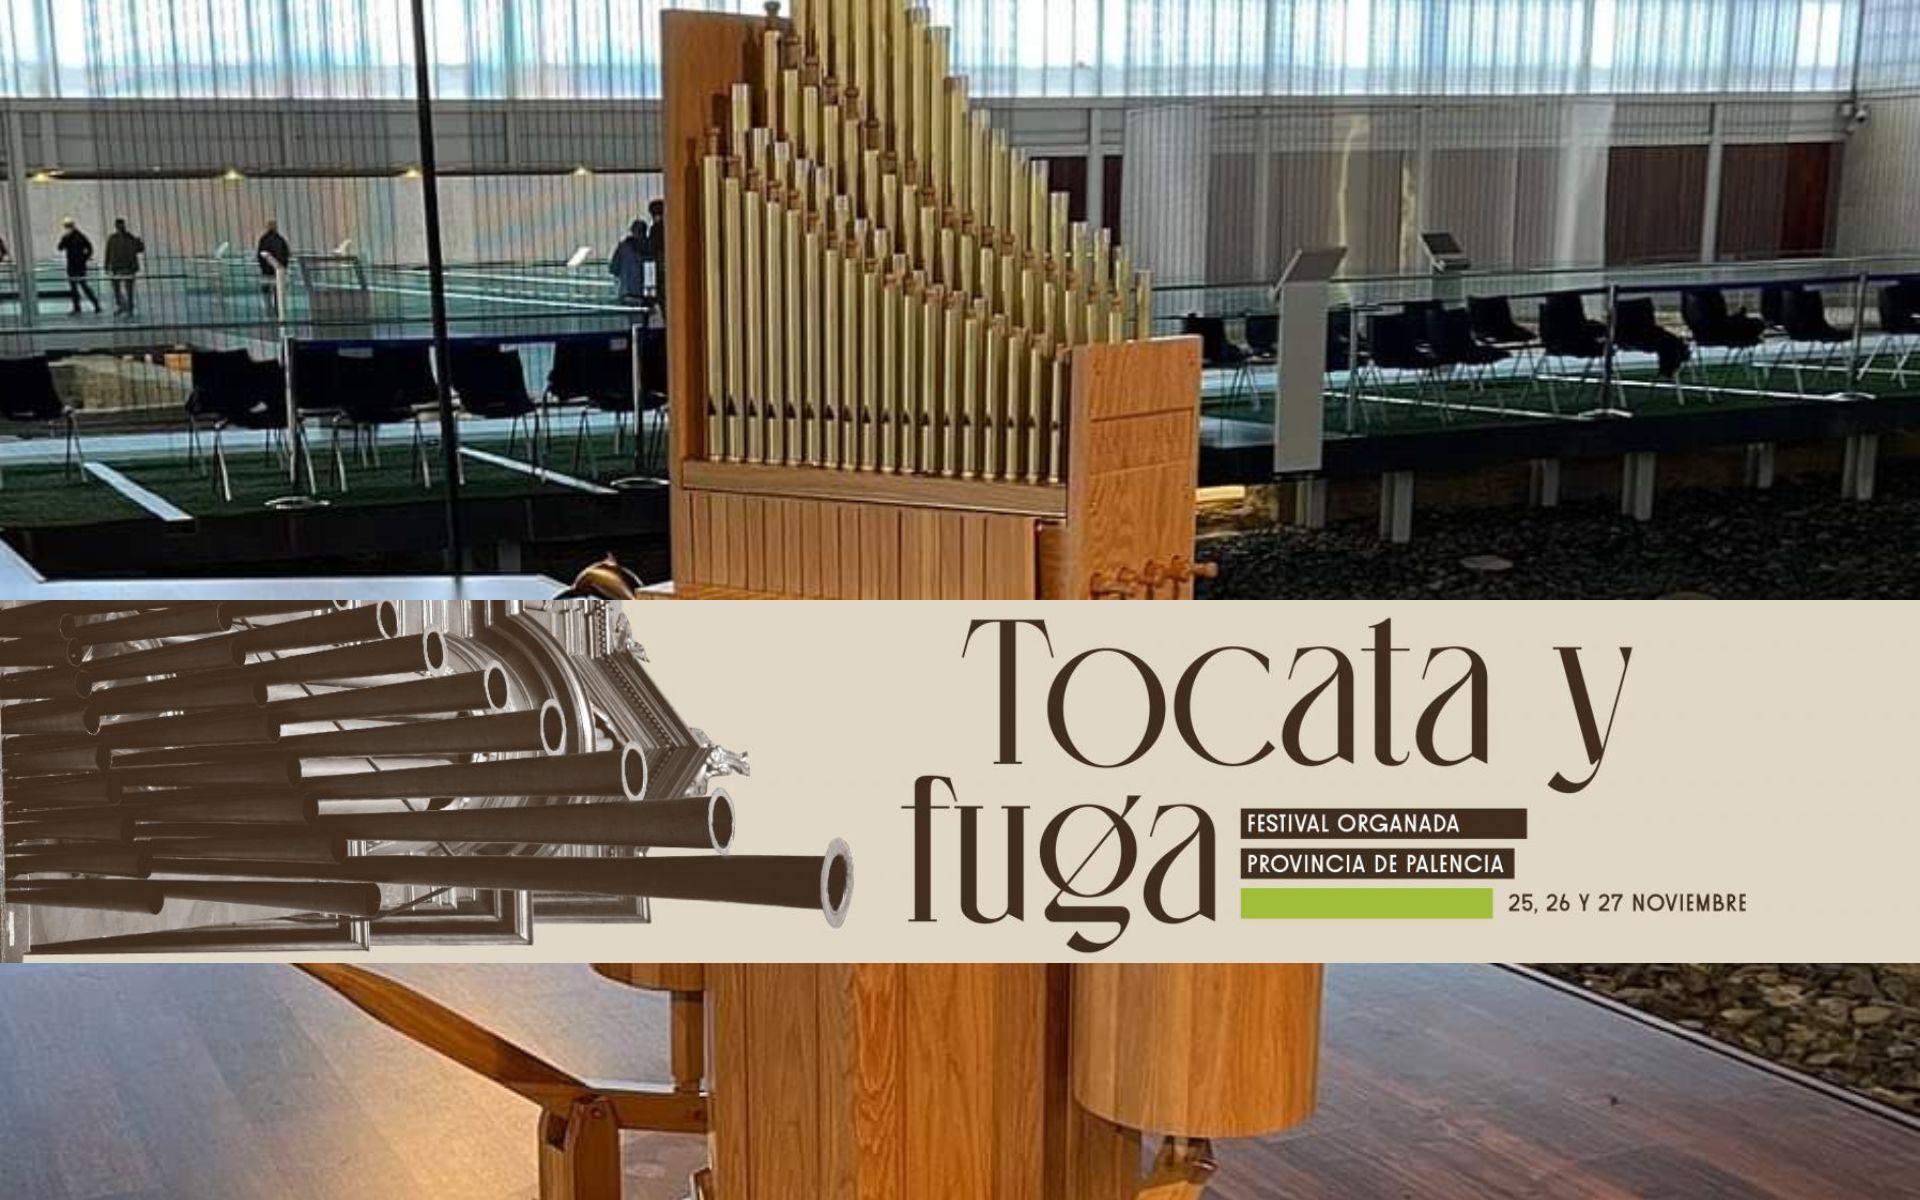 Festival Organada "Tocata y fuga" | Concierto de "Hydraulis" en La Olmeda